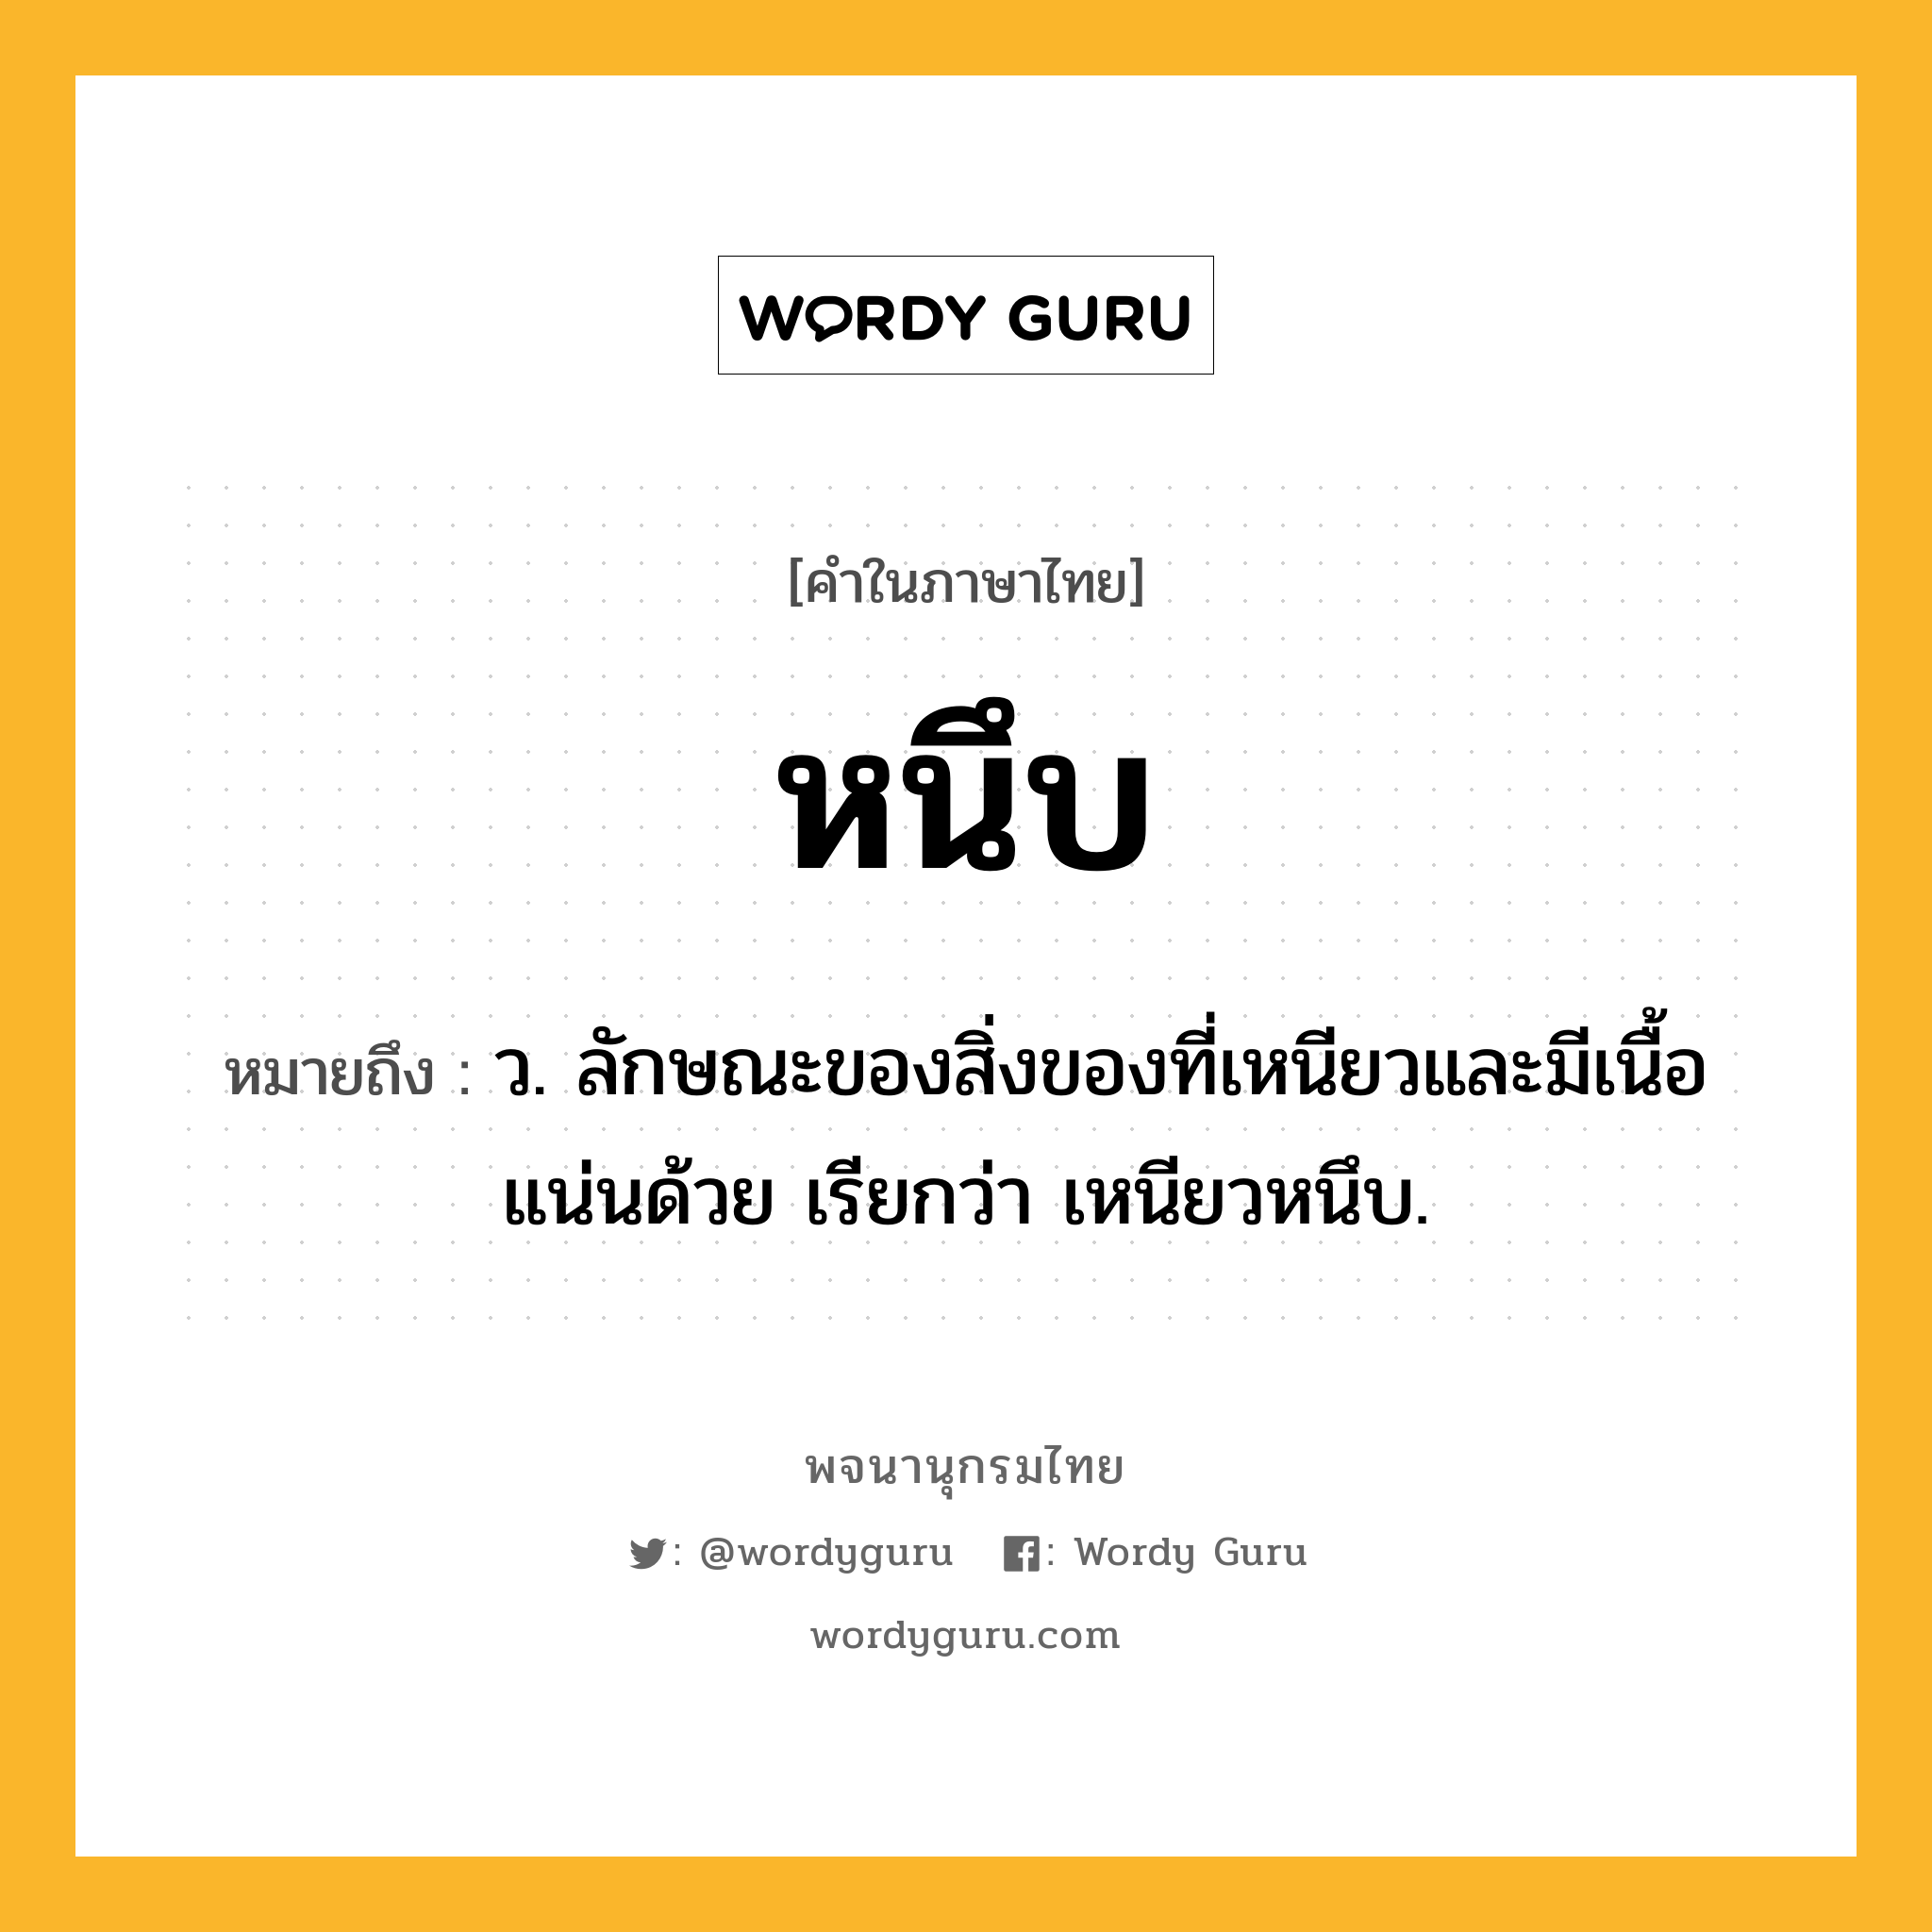 หนึบ ความหมาย หมายถึงอะไร?, คำในภาษาไทย หนึบ หมายถึง ว. ลักษณะของสิ่งของที่เหนียวและมีเนื้อแน่นด้วย เรียกว่า เหนียวหนึบ.